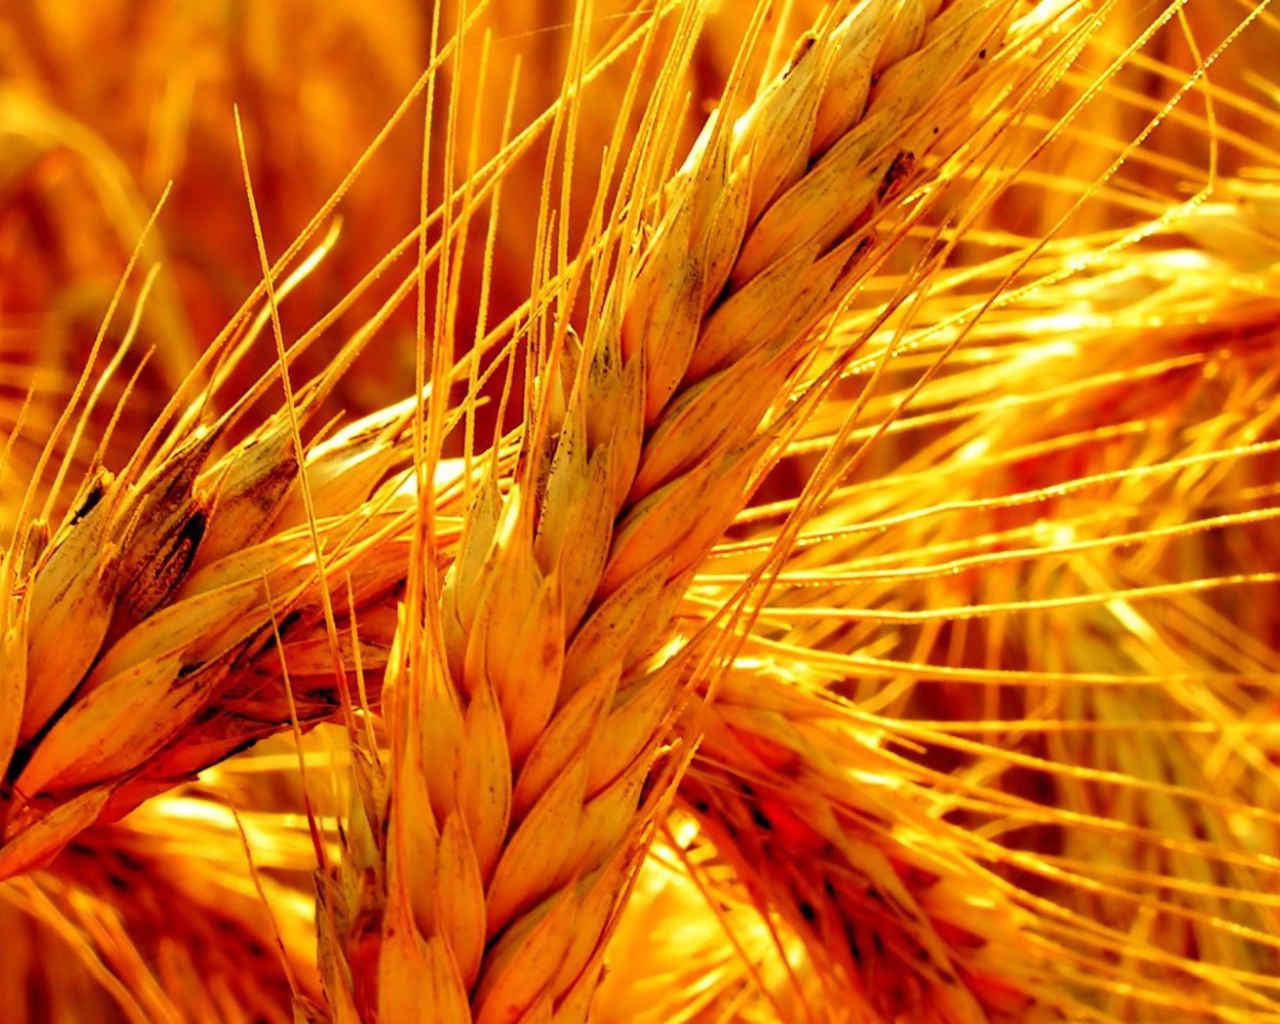 Макро фото оранжевой зрелой пшеницы